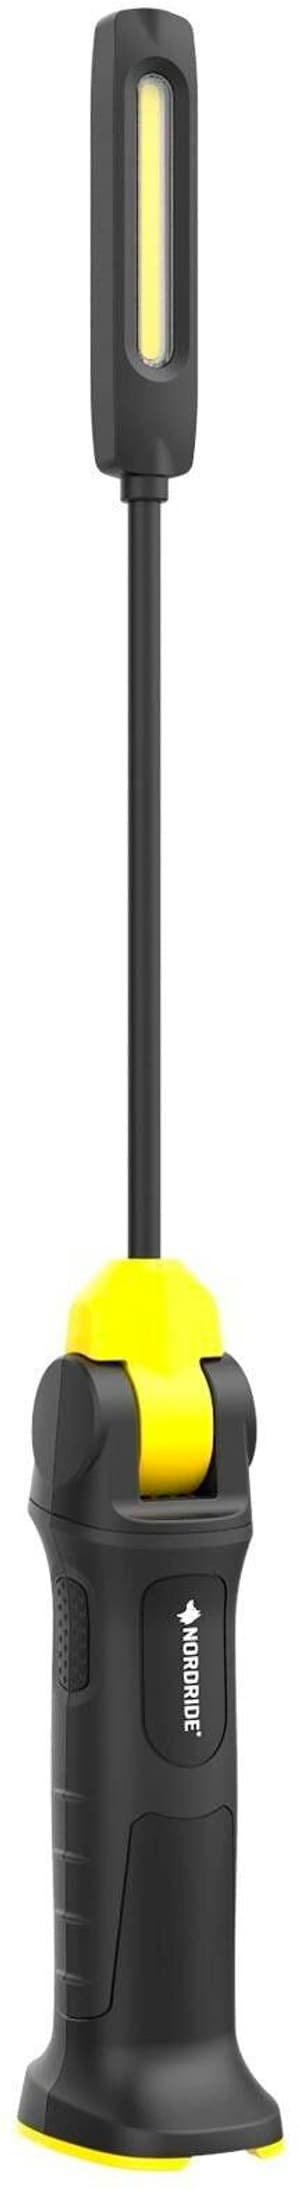 Lampe portative Twist Light 500 lm, IP65, avec aimant et crochet